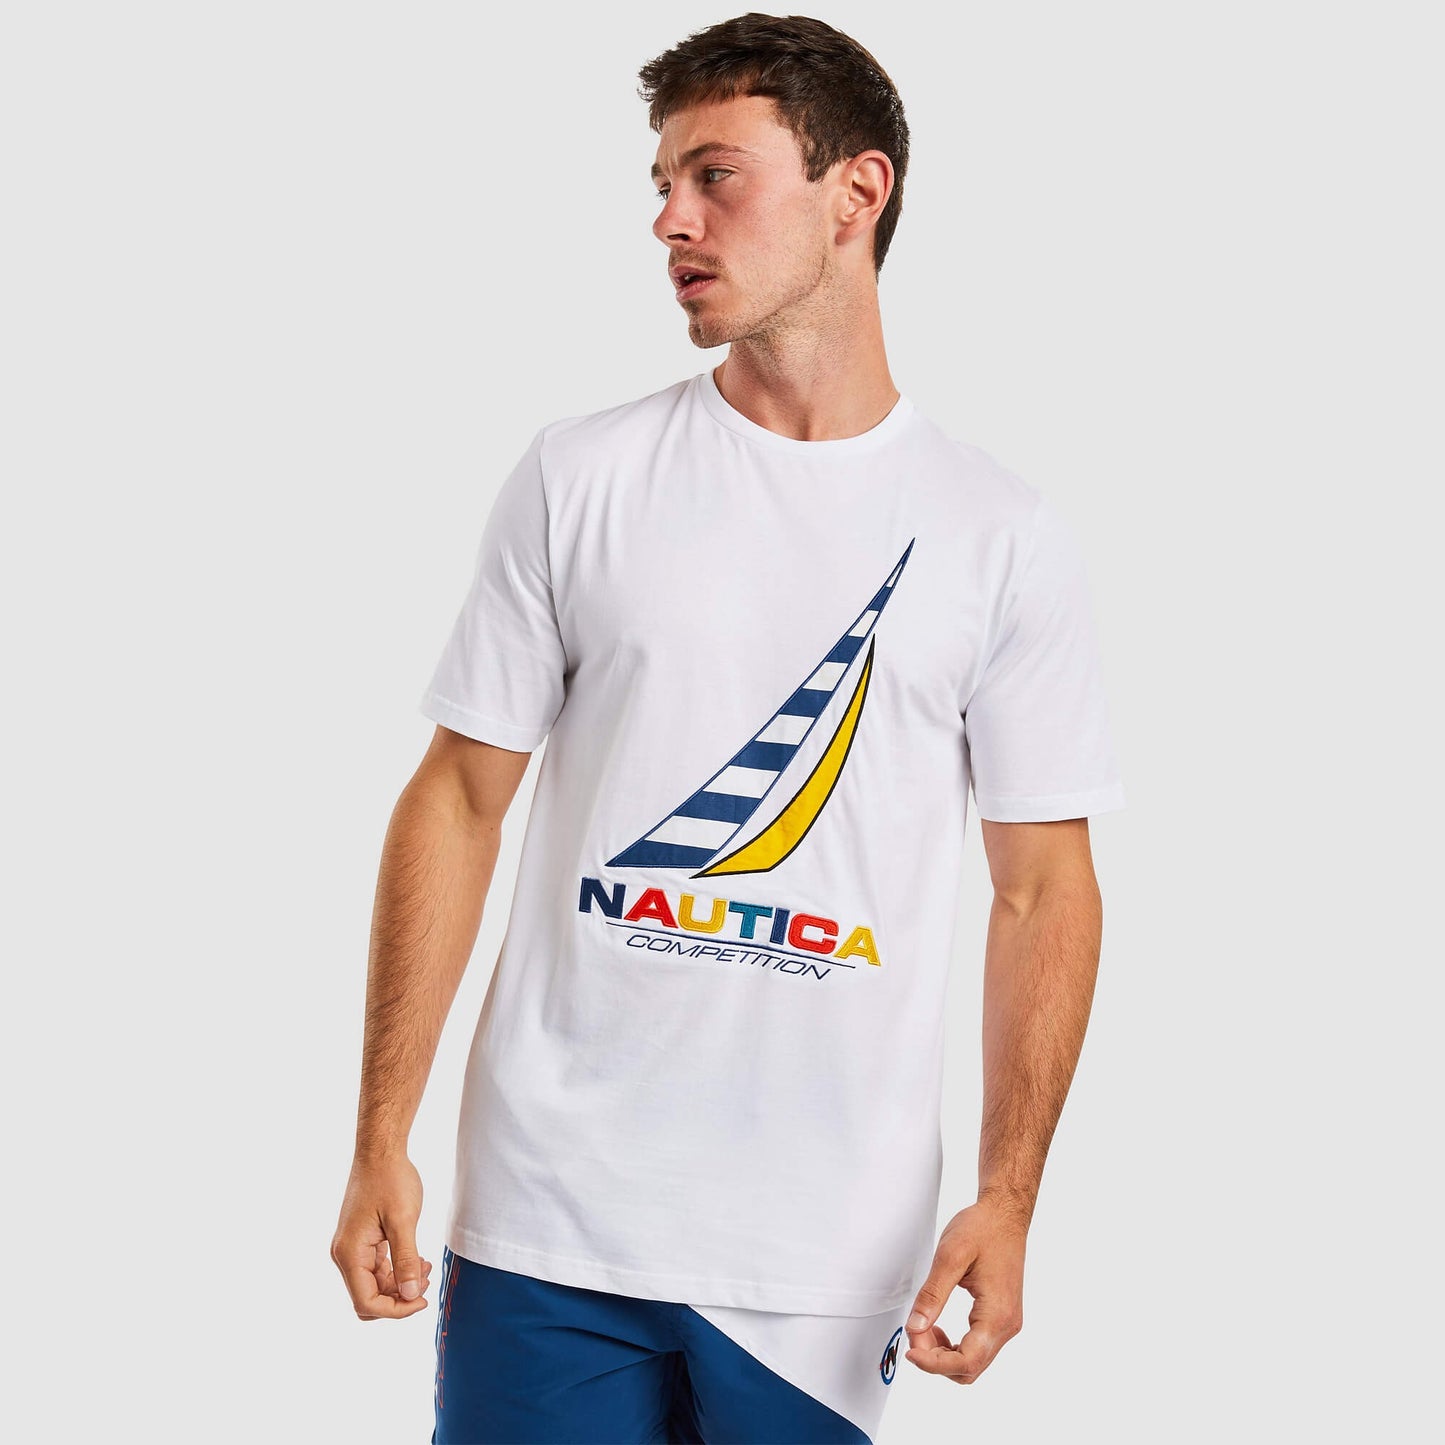 Nautica Zebec T-Shirt White